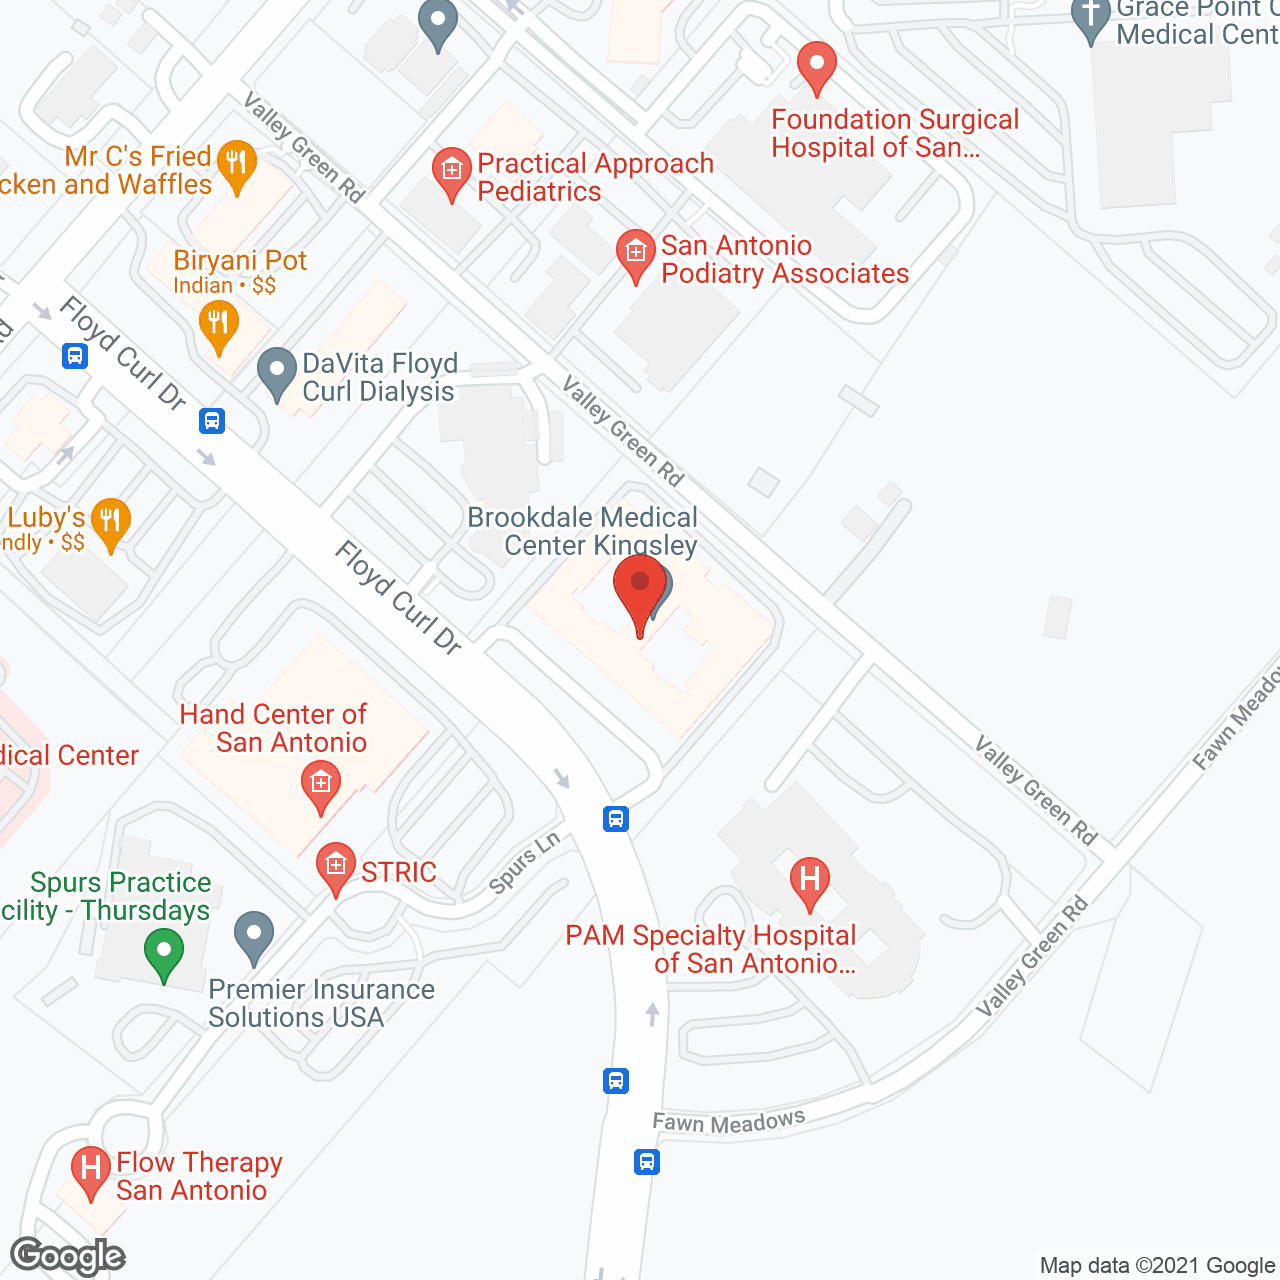 Brookdale Medical Center Kingsley in google map